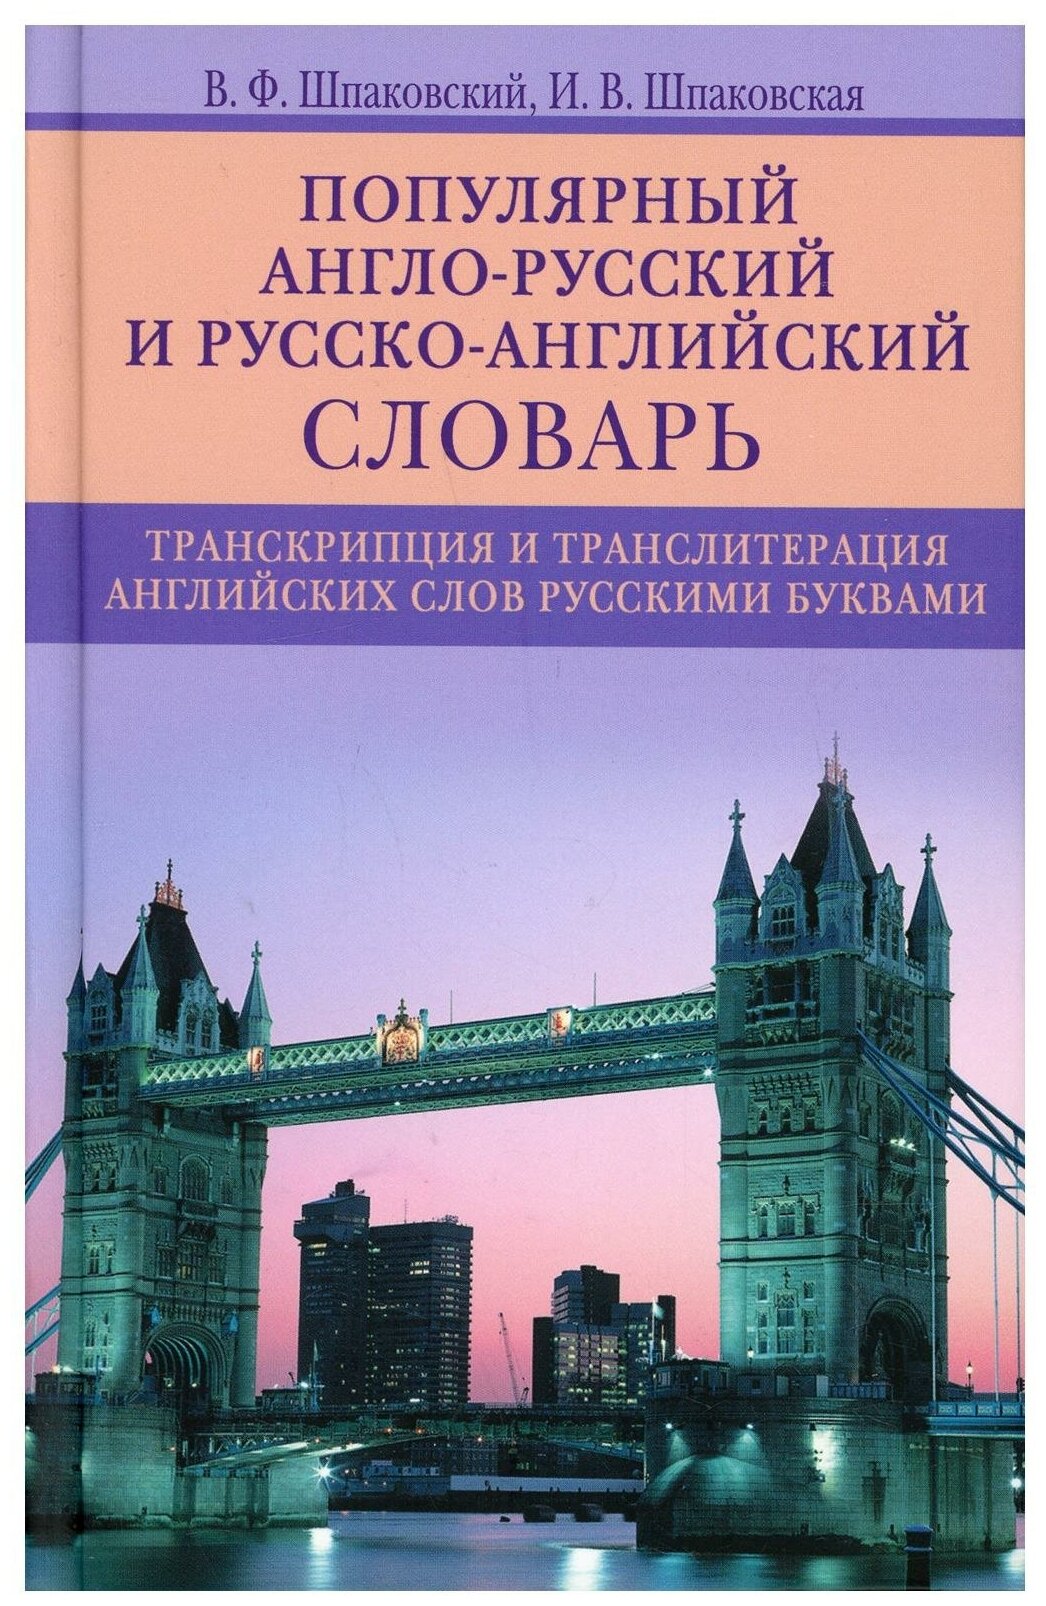 Популярный англо-русский и русско-английский словарь. Транскрипция и транслитерапия